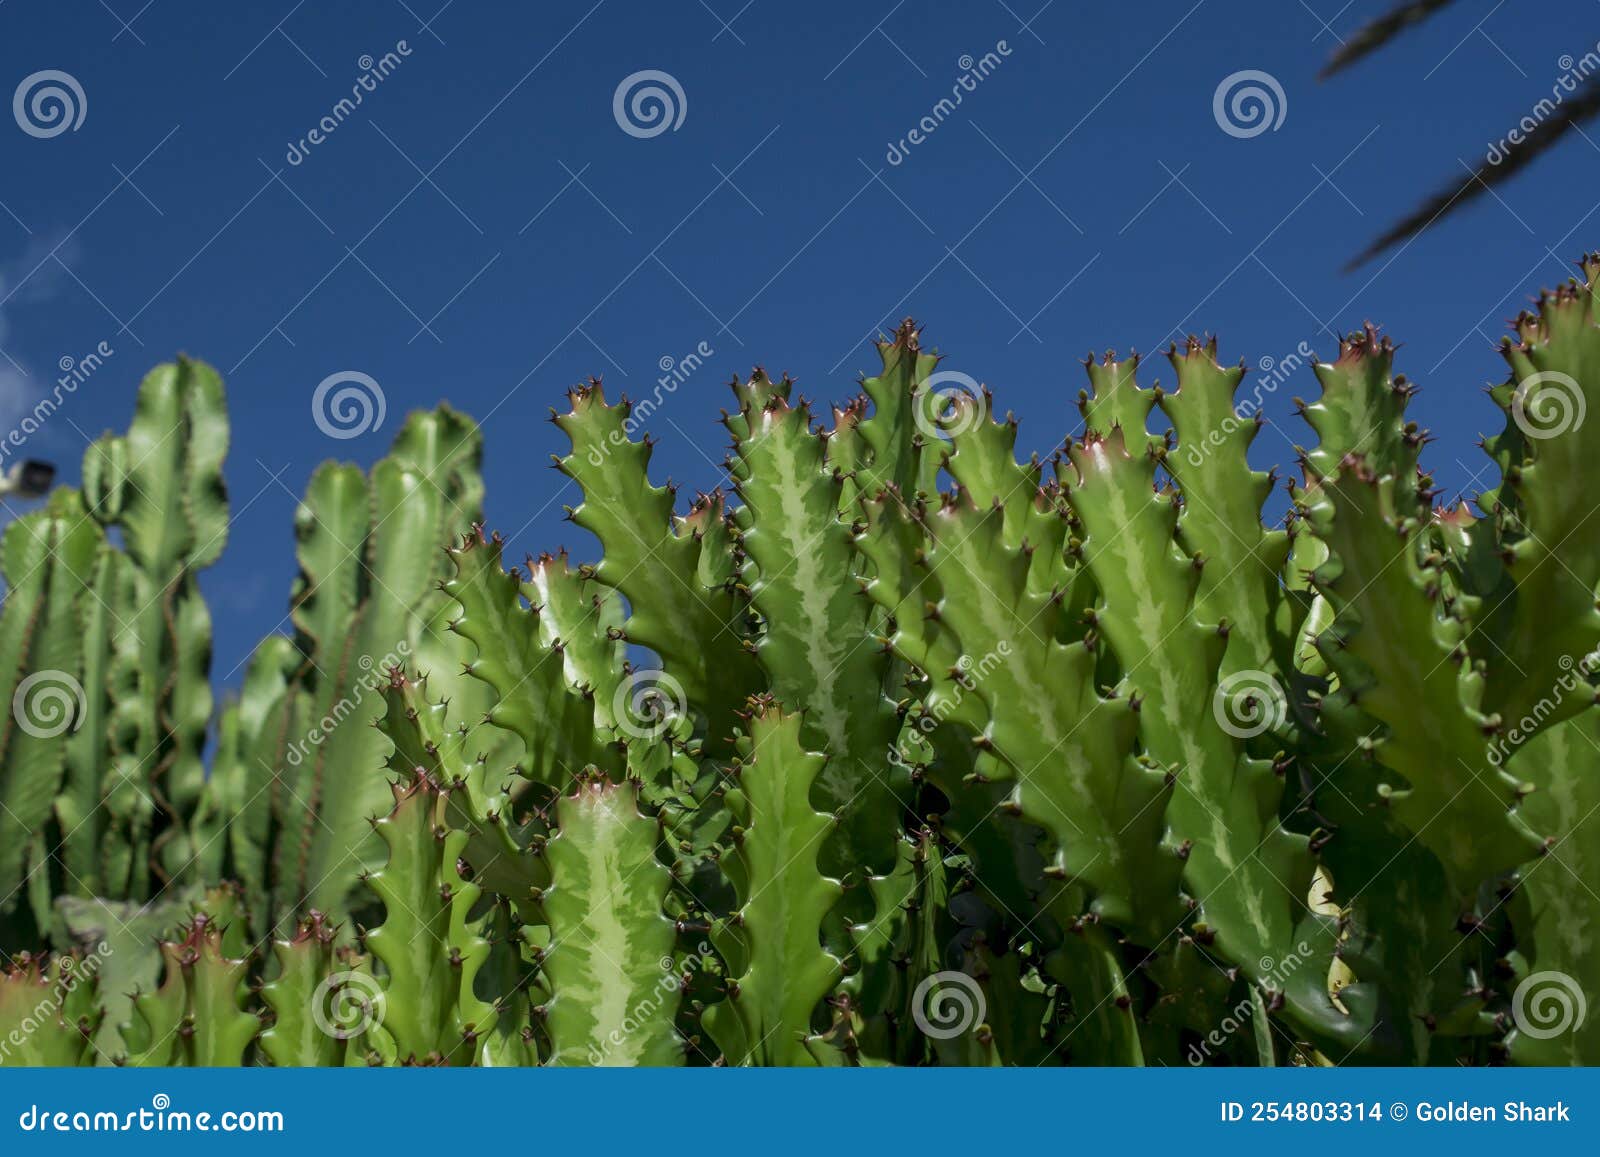 euphorbia resinifera cactus with blue sky